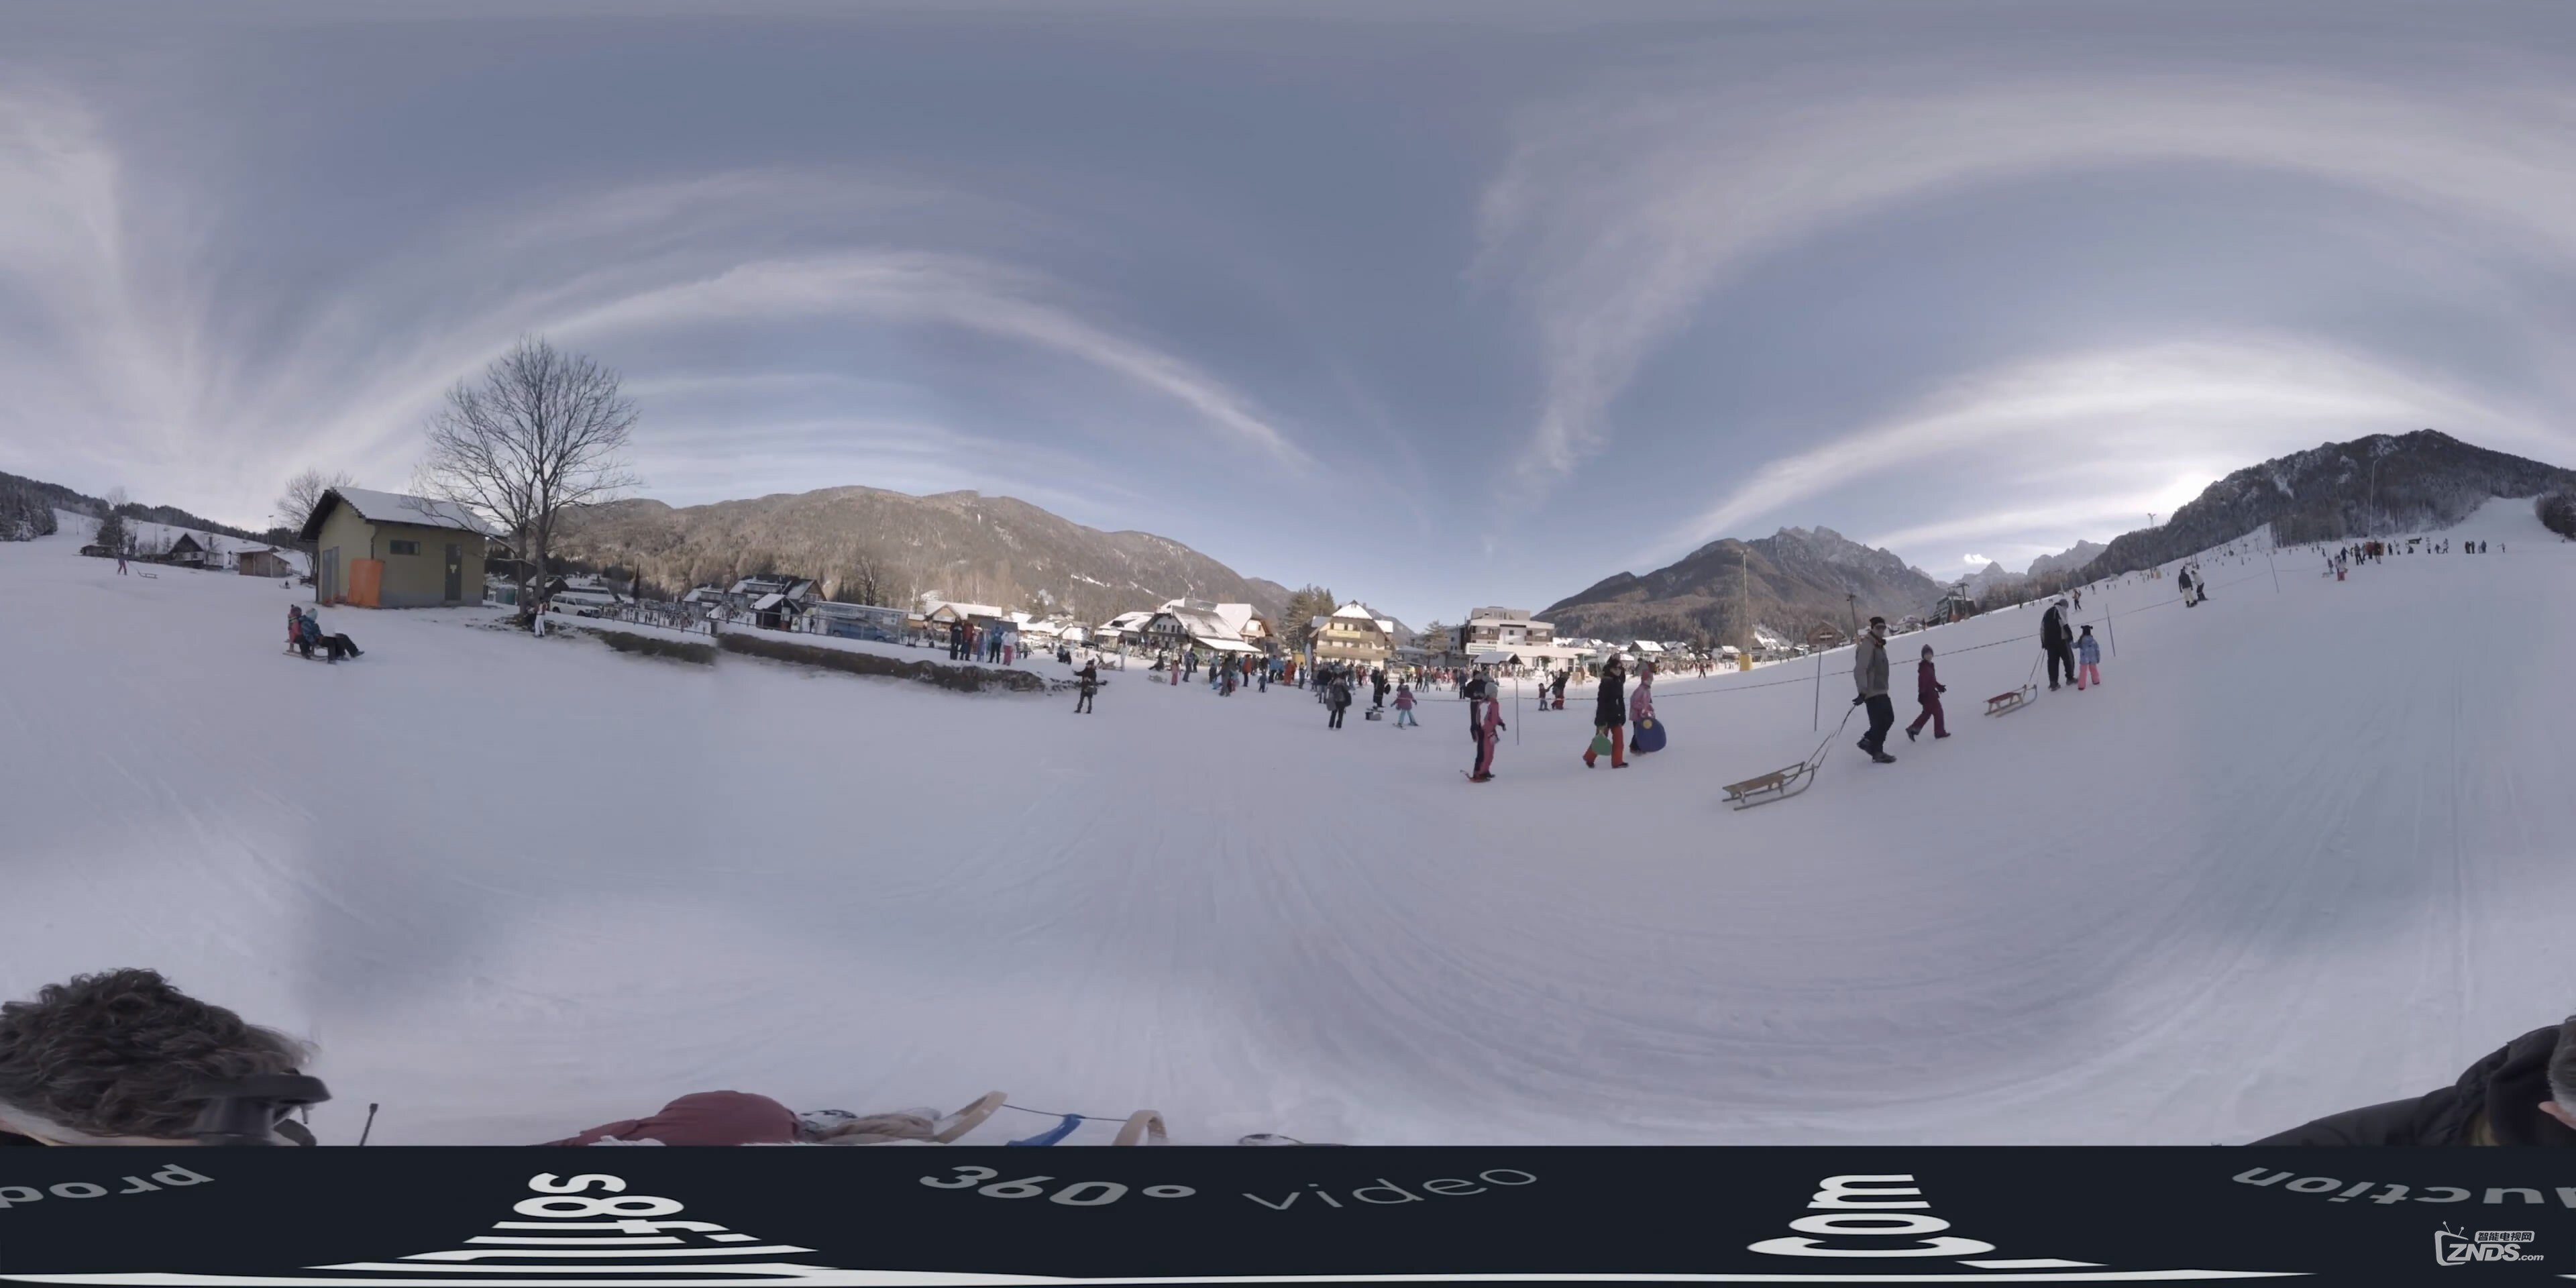 3dmax渲染的360全景效果图怎么做成视频？ - 知乎